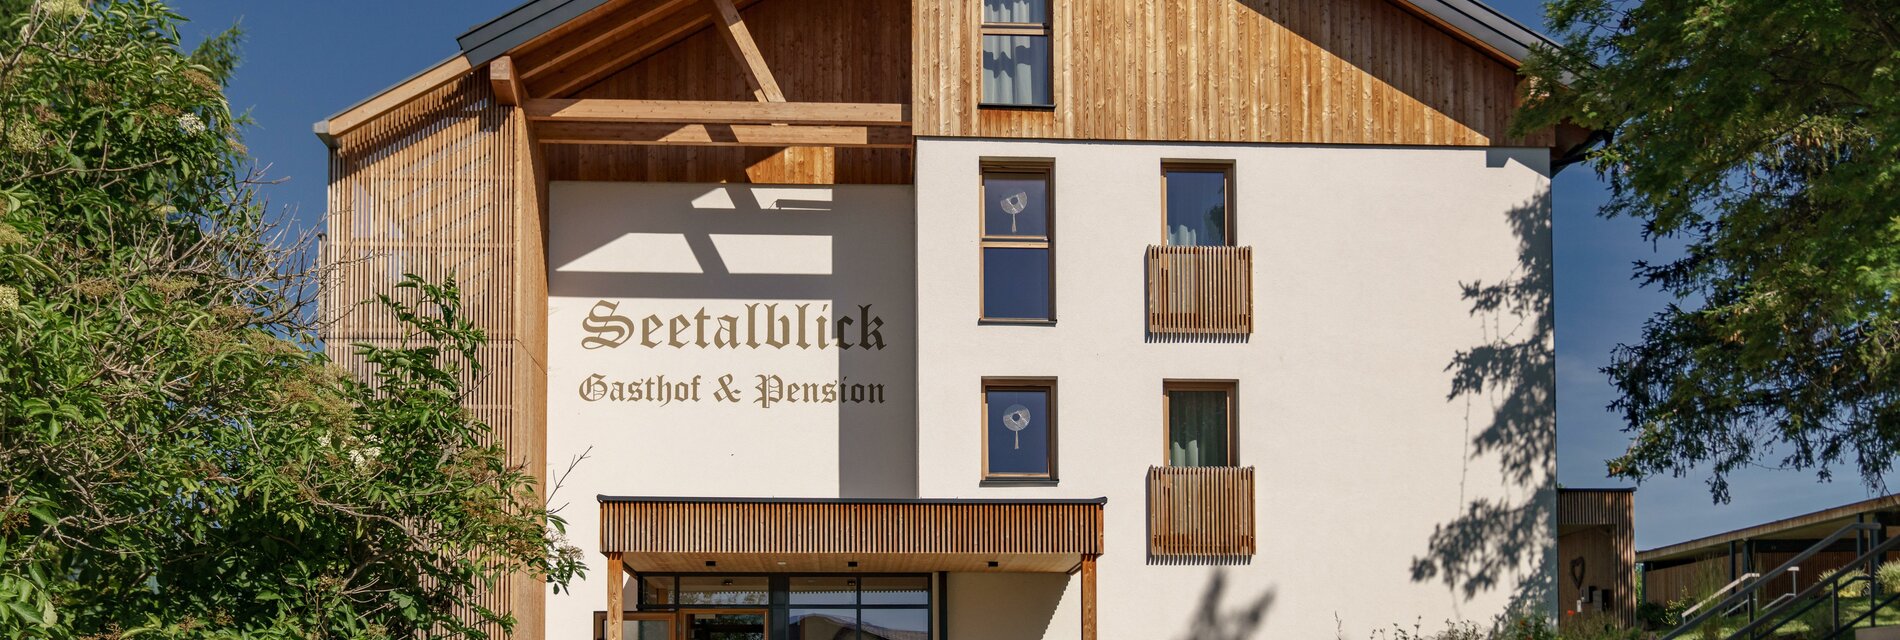 Seetalblick-Außenansicht-Murtal-Steiermark